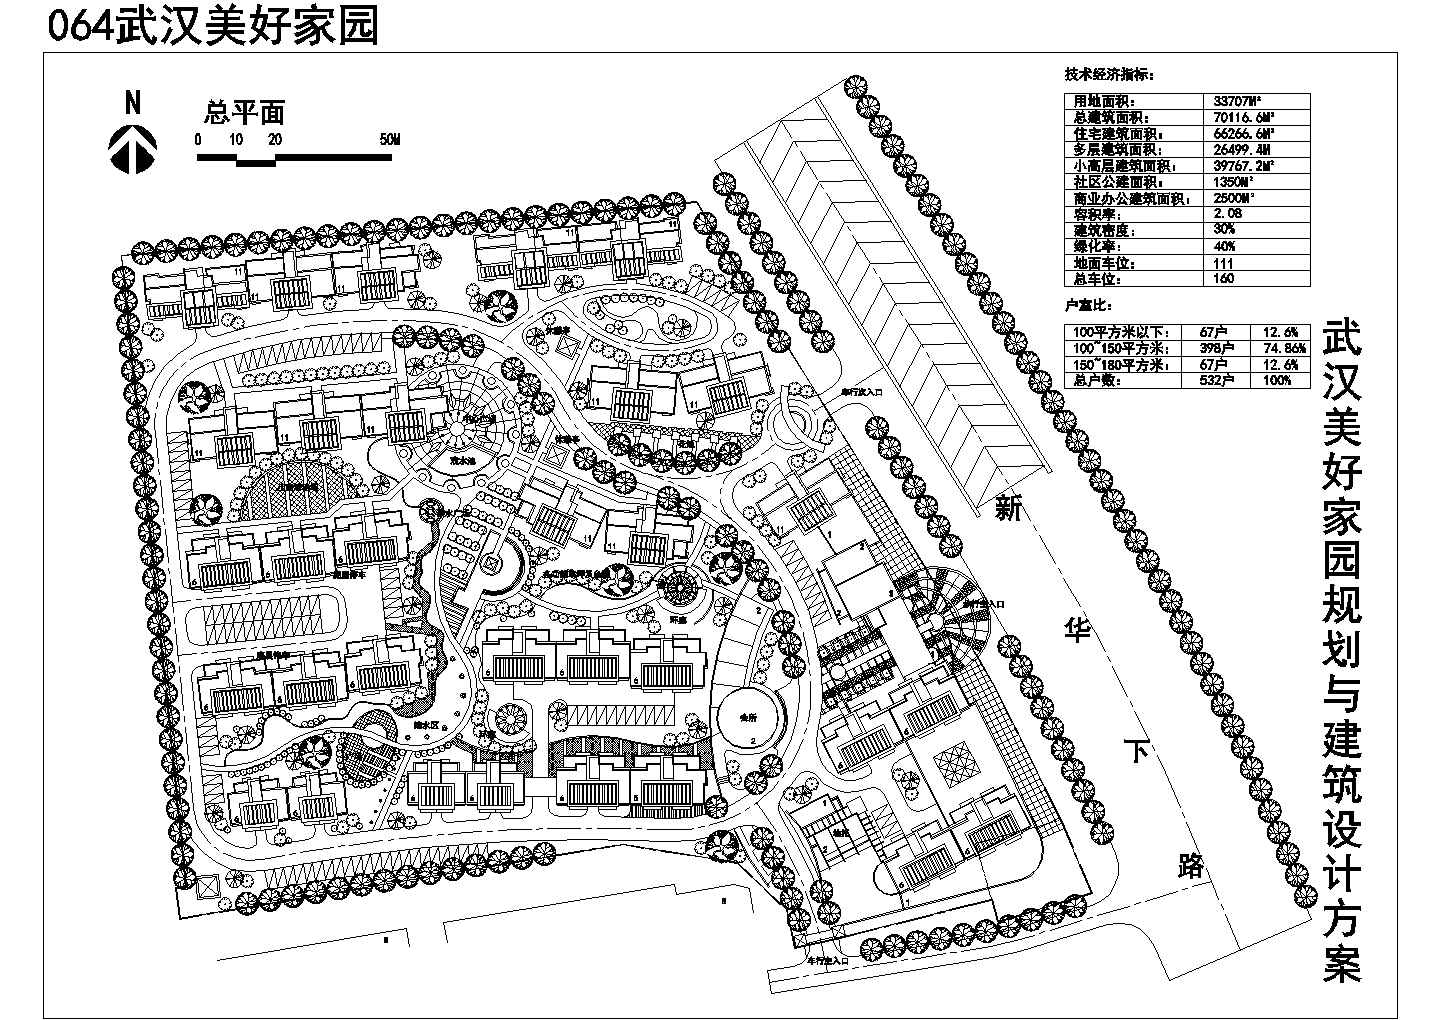 武汉美好家园景观规划设计总平面图